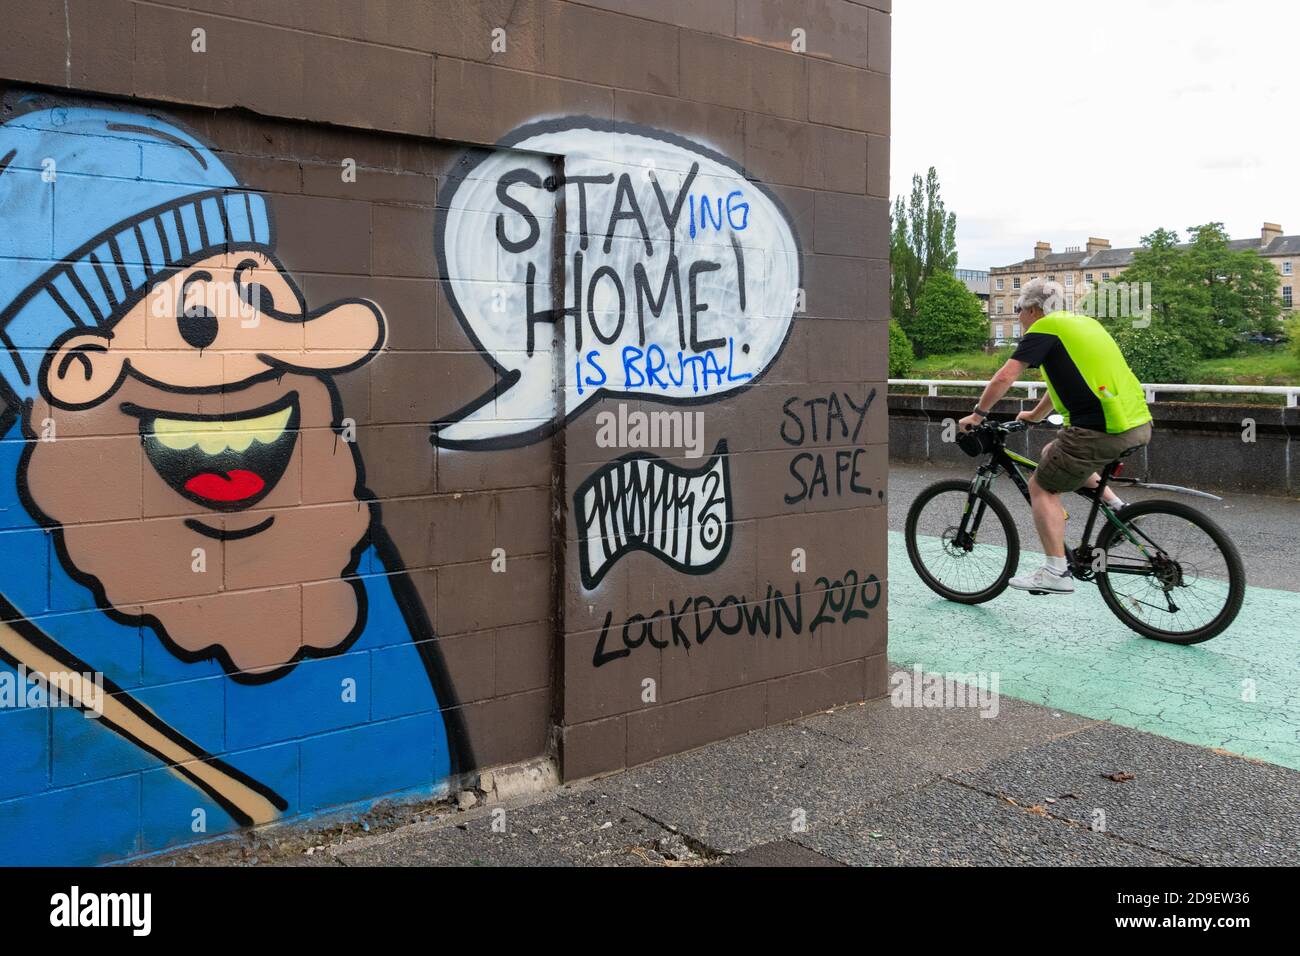 Salute mentale durante il blocco - soggiorno Casa coronavirus graffiti a Glasgow modificato per leggere 'staying in casa è brutale' Glasgow, Scozia, Regno Unito giugno 2020 Foto Stock